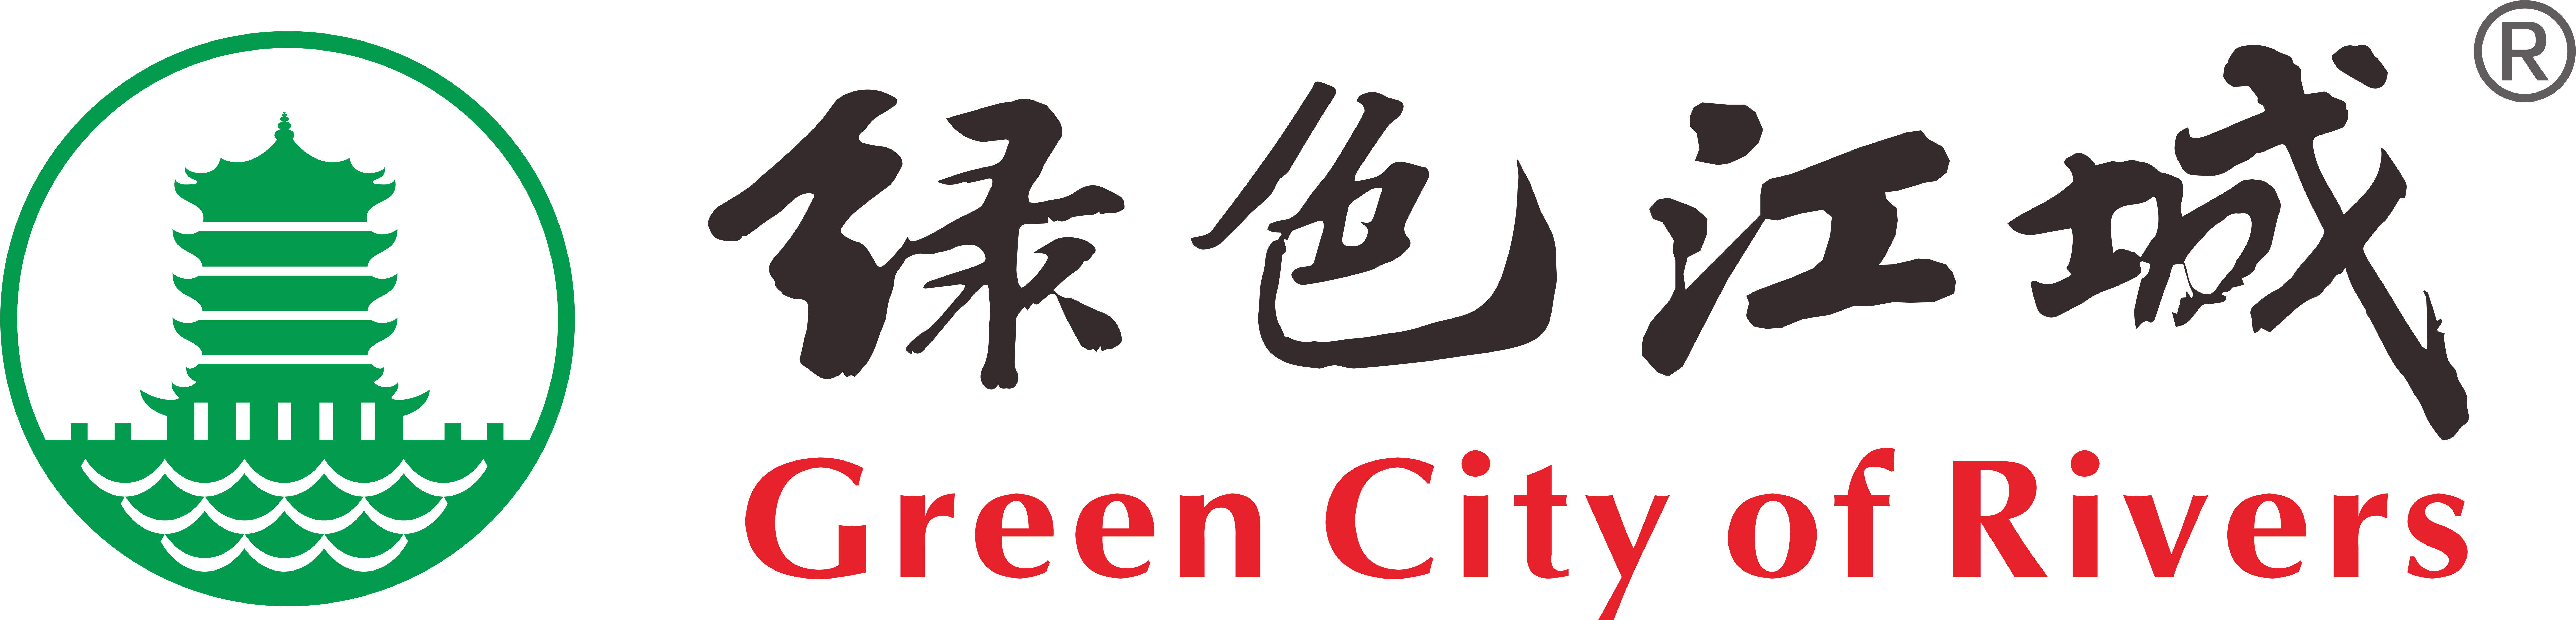 团队志愿者-武汉环保社会组织“绿色江城”